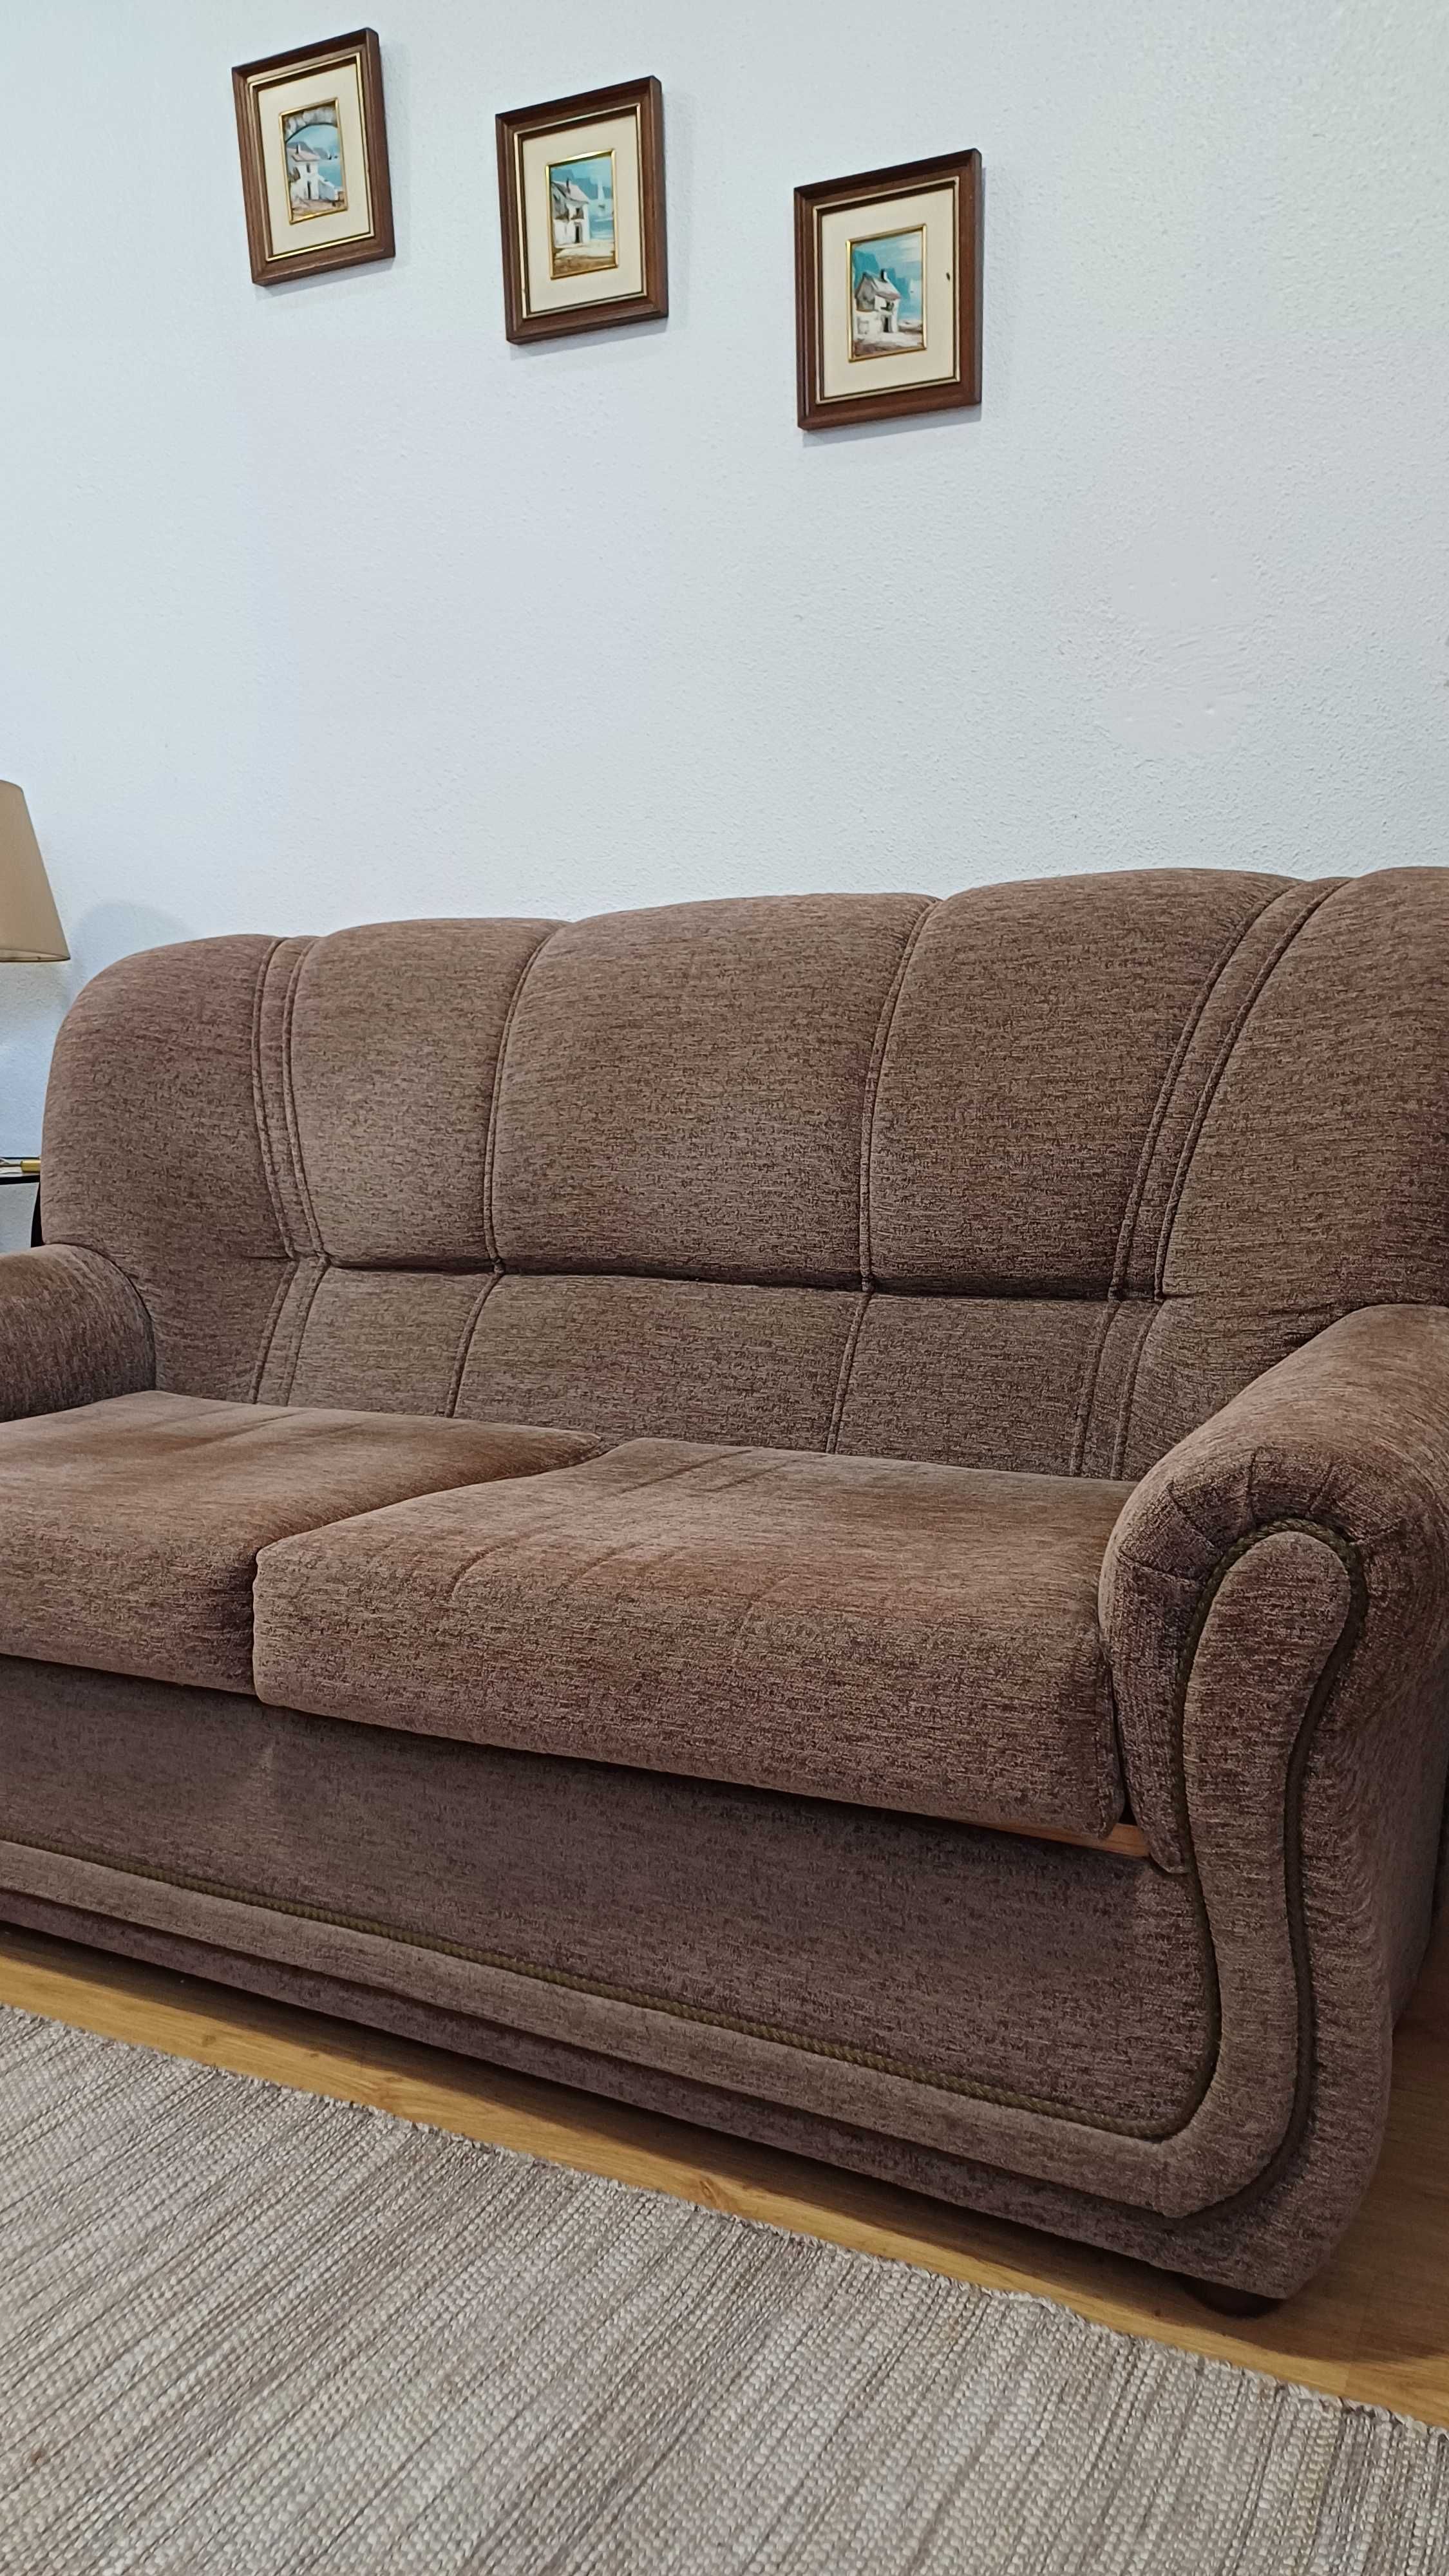 Vendo sofá castanho em bom estado de utilização